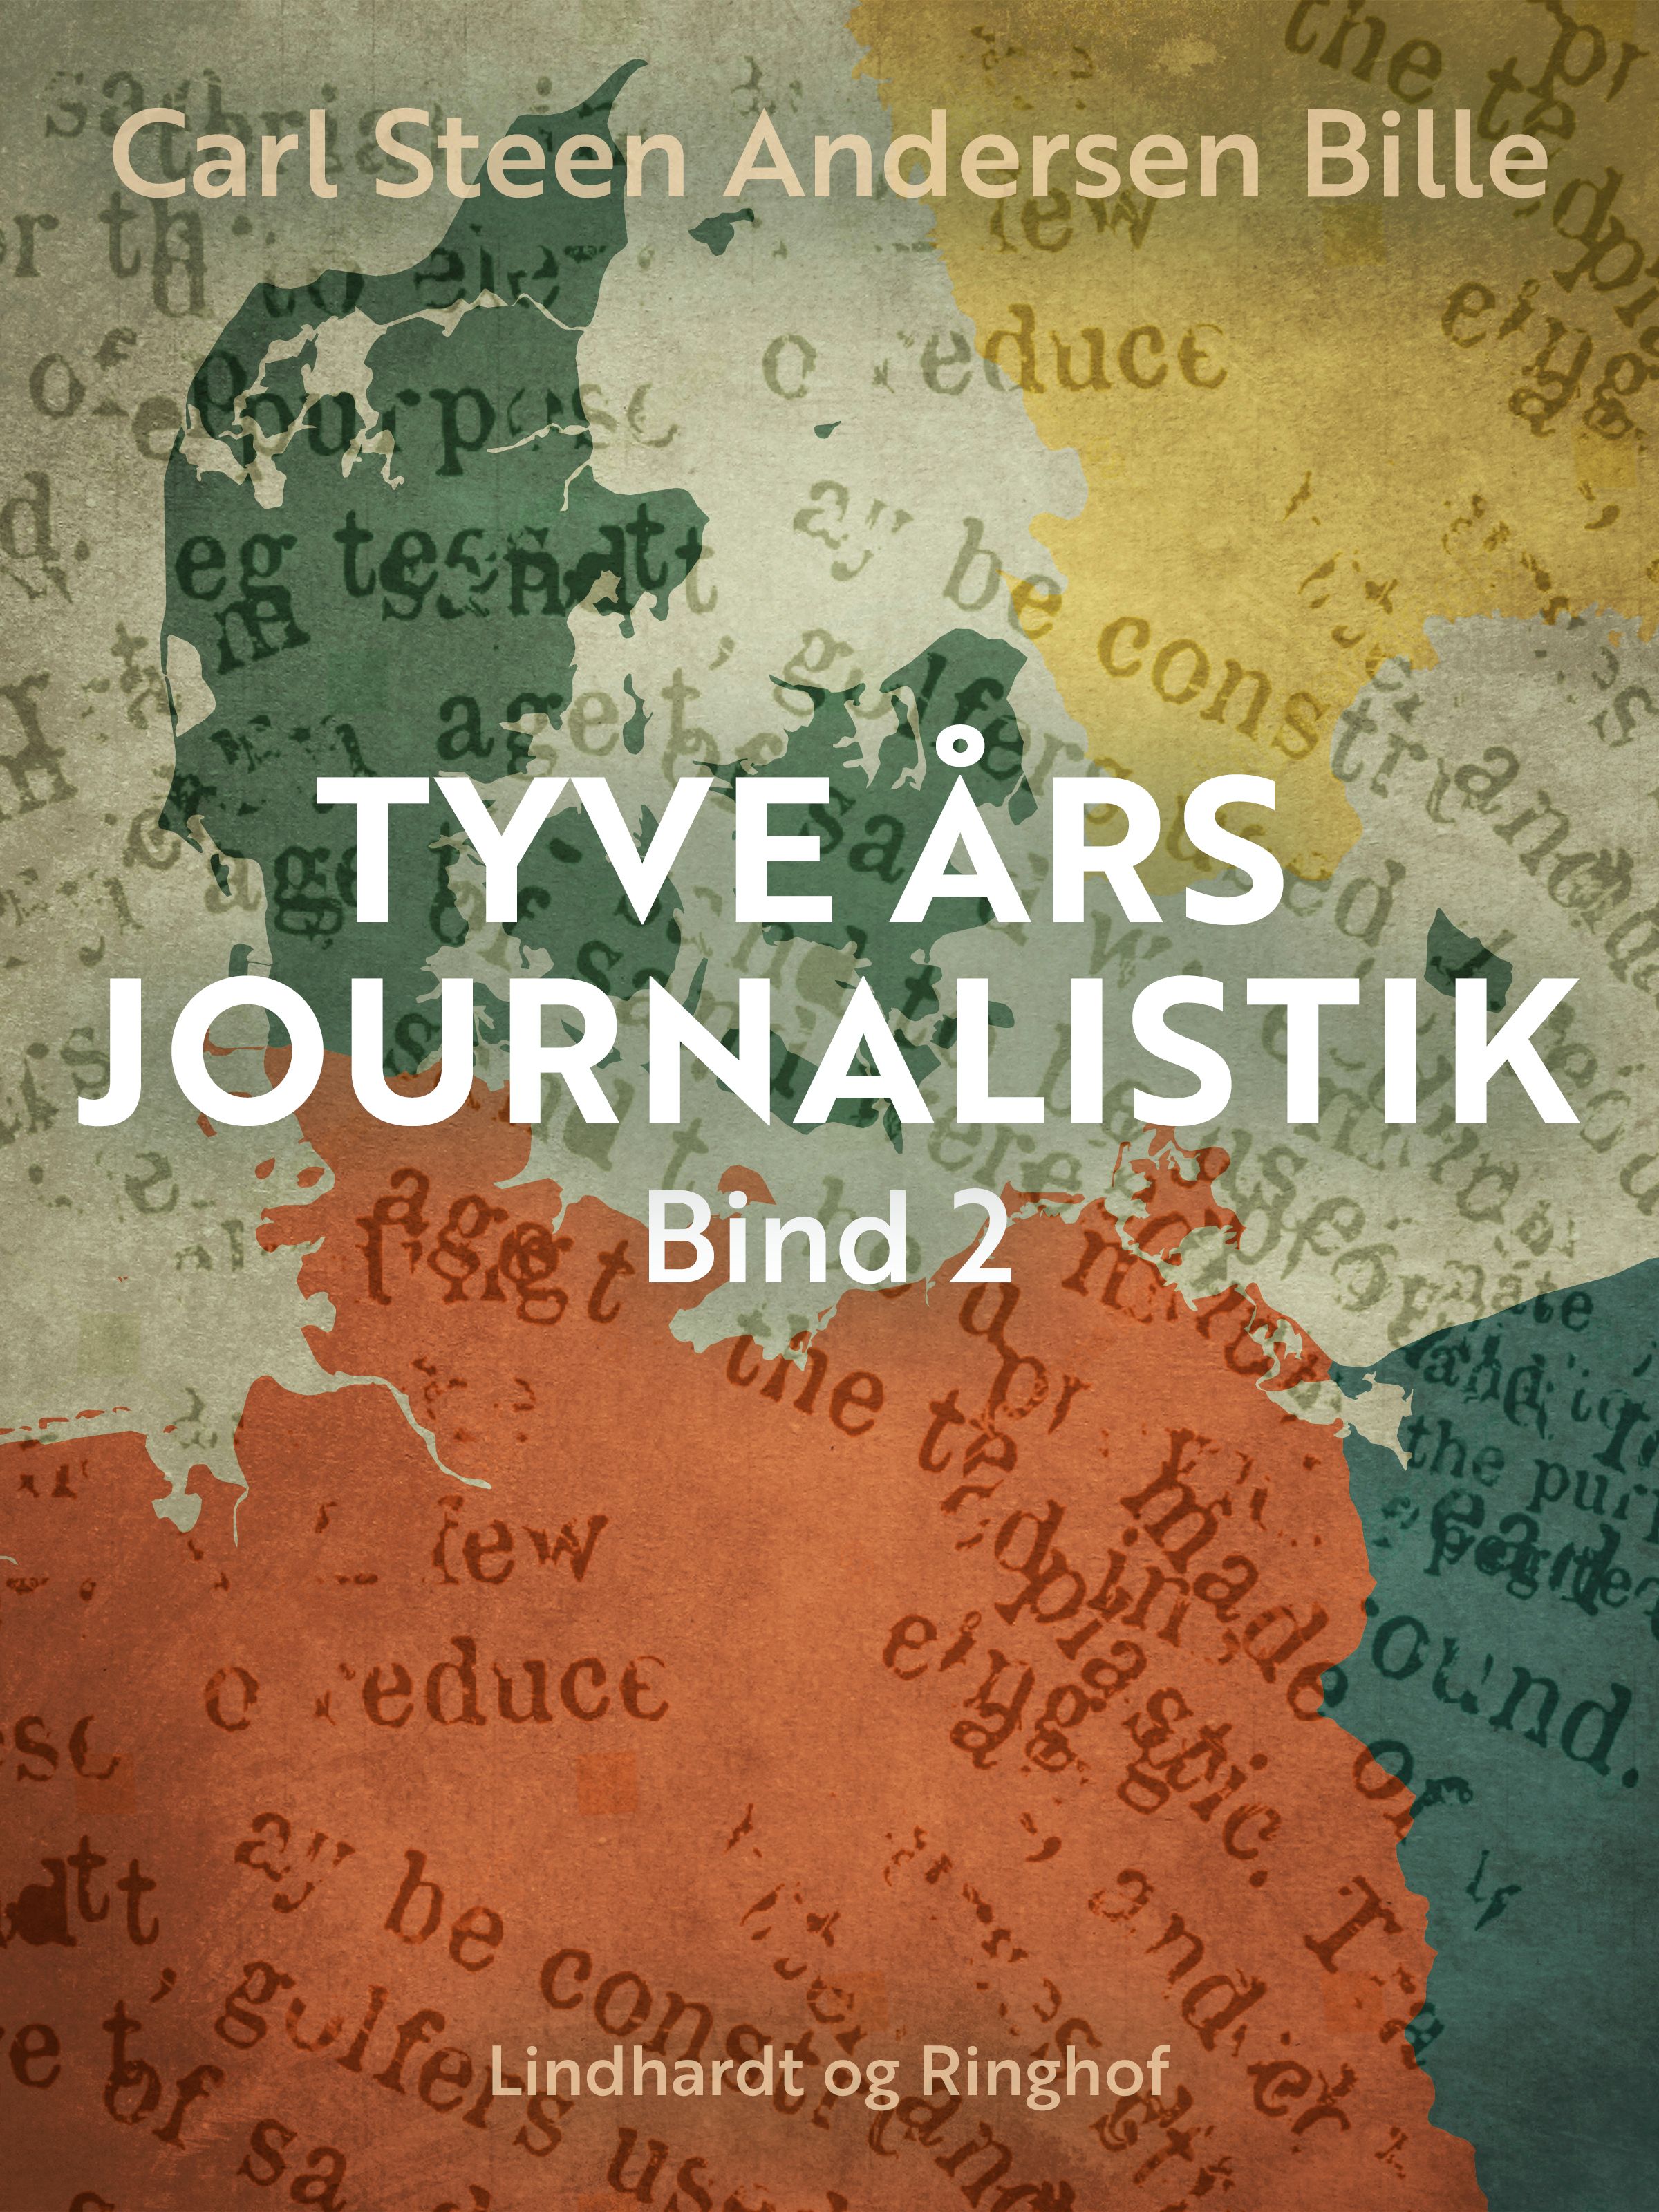 Tyve års journalistik. Bind 2, e-bog af Carl Steen Andersen Bille